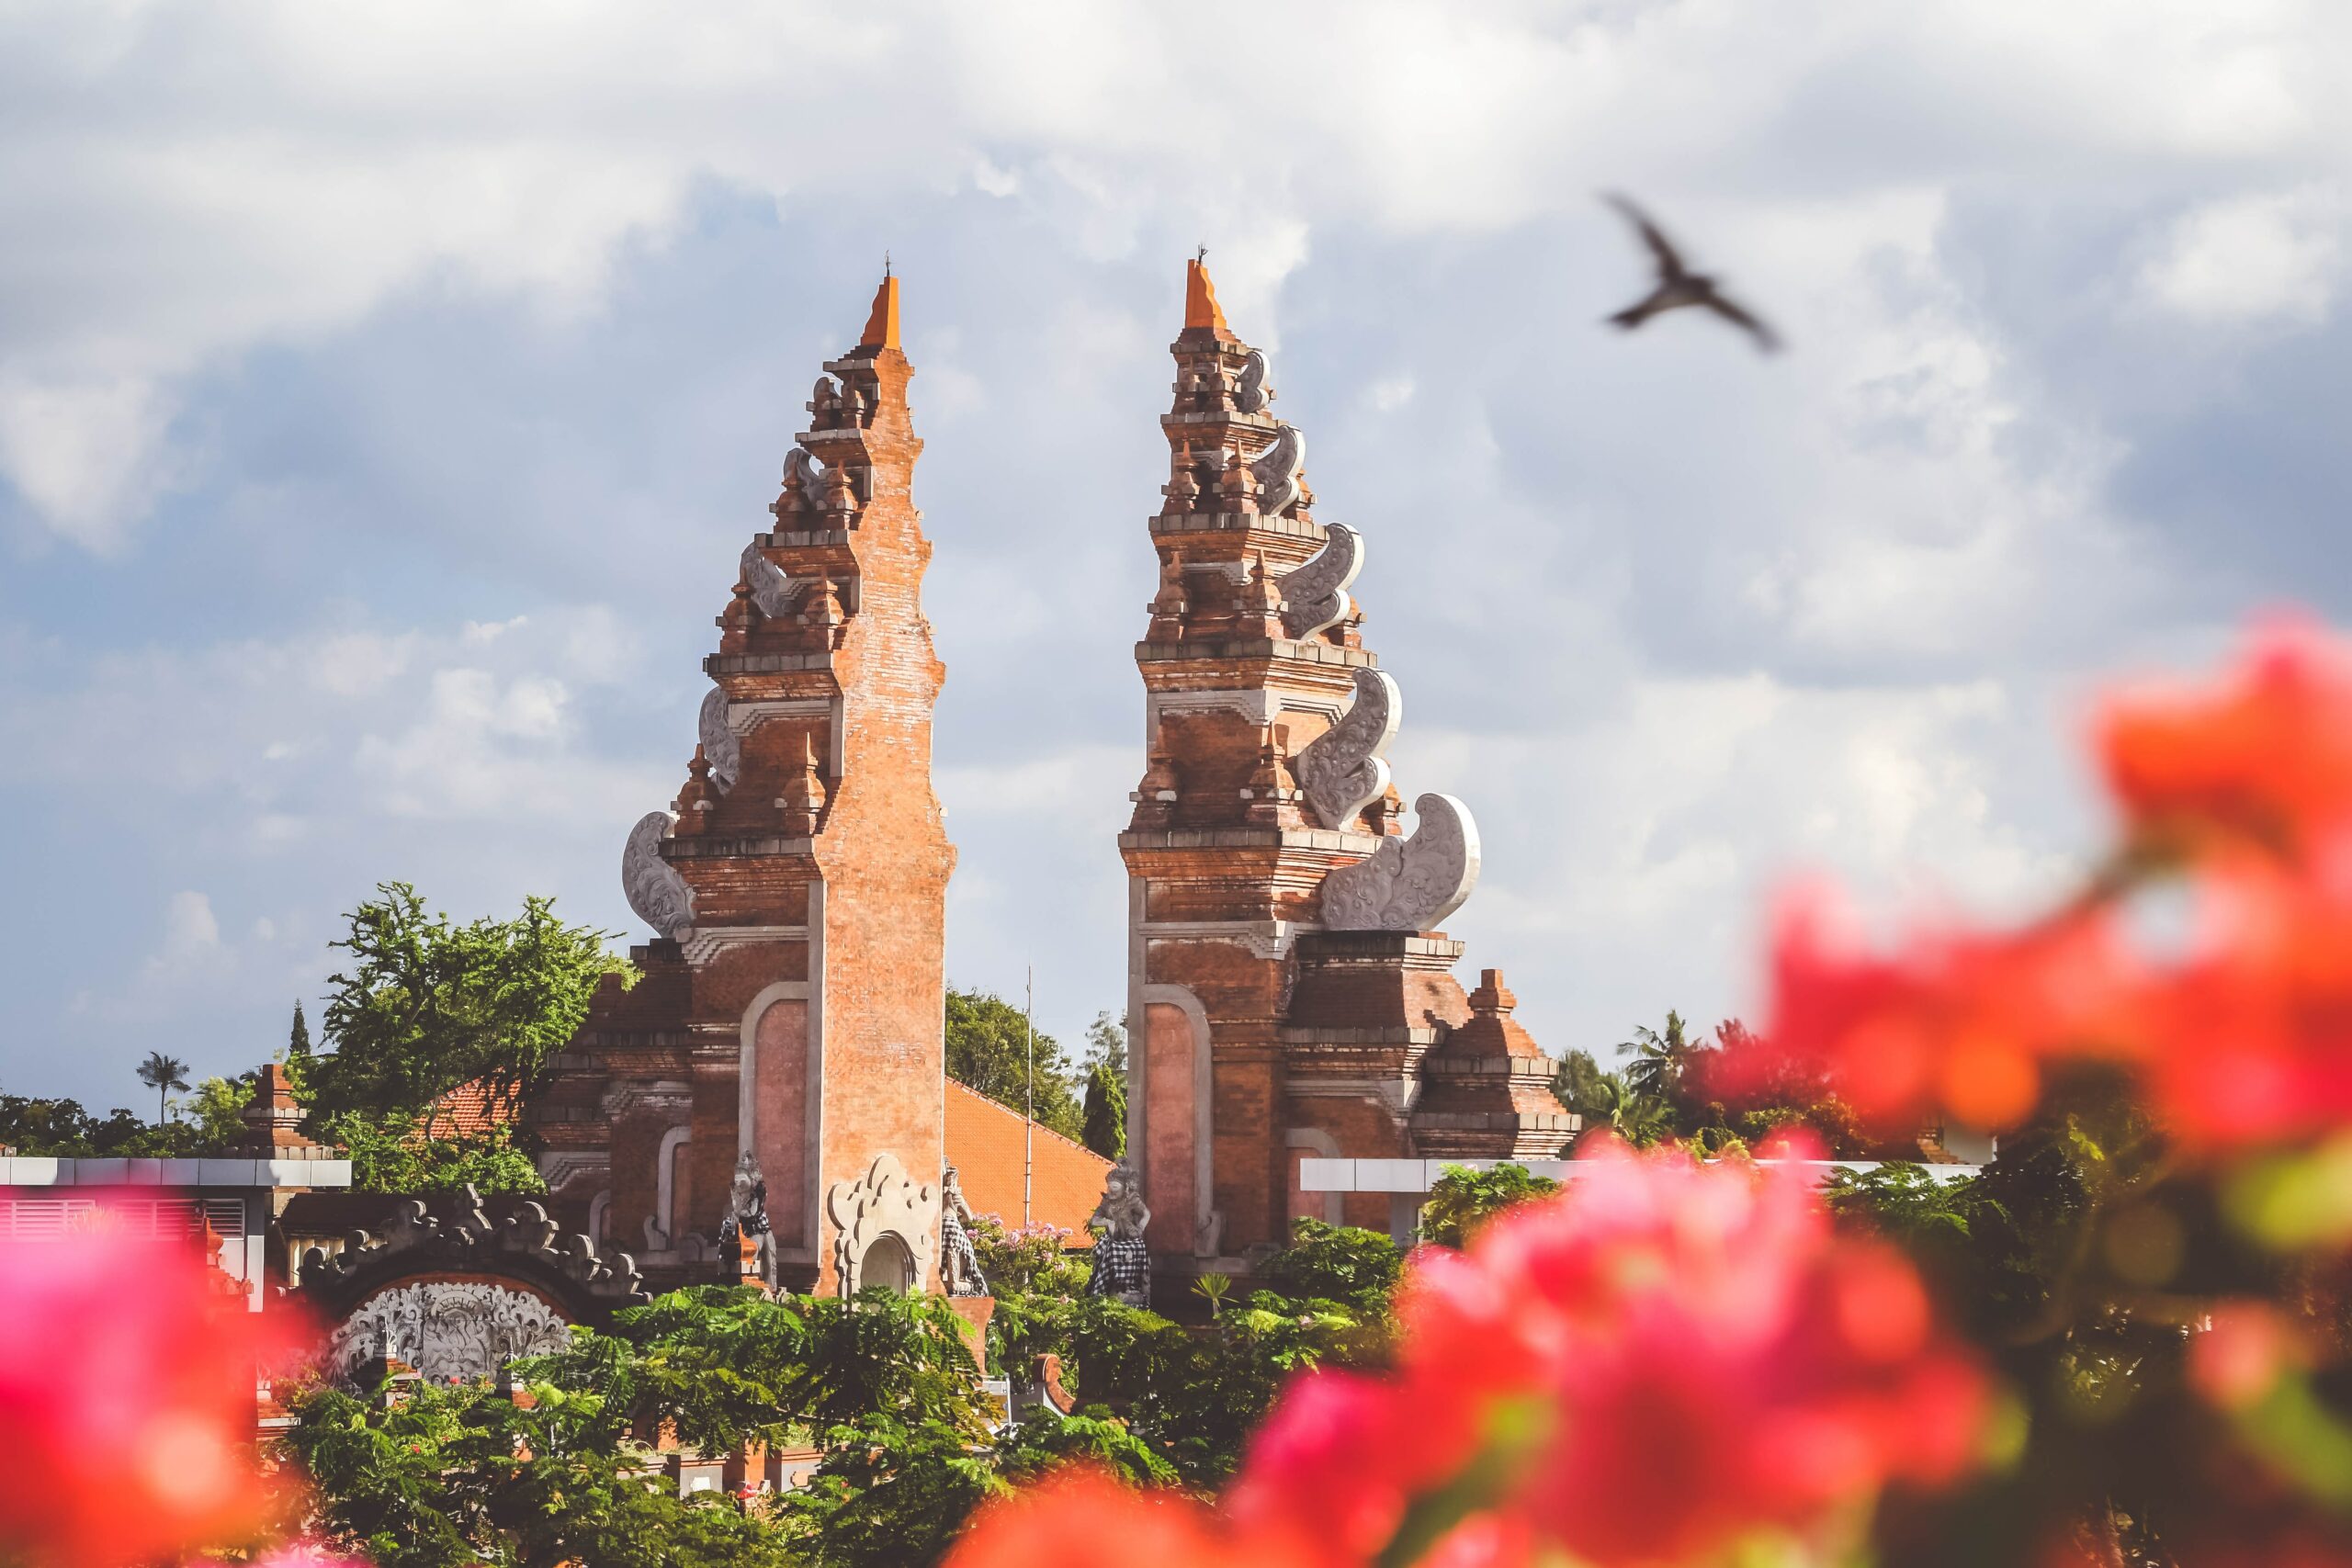 Naordinuj si odpočinek s letenkami z Prahy na Bali od 17 990 Kč